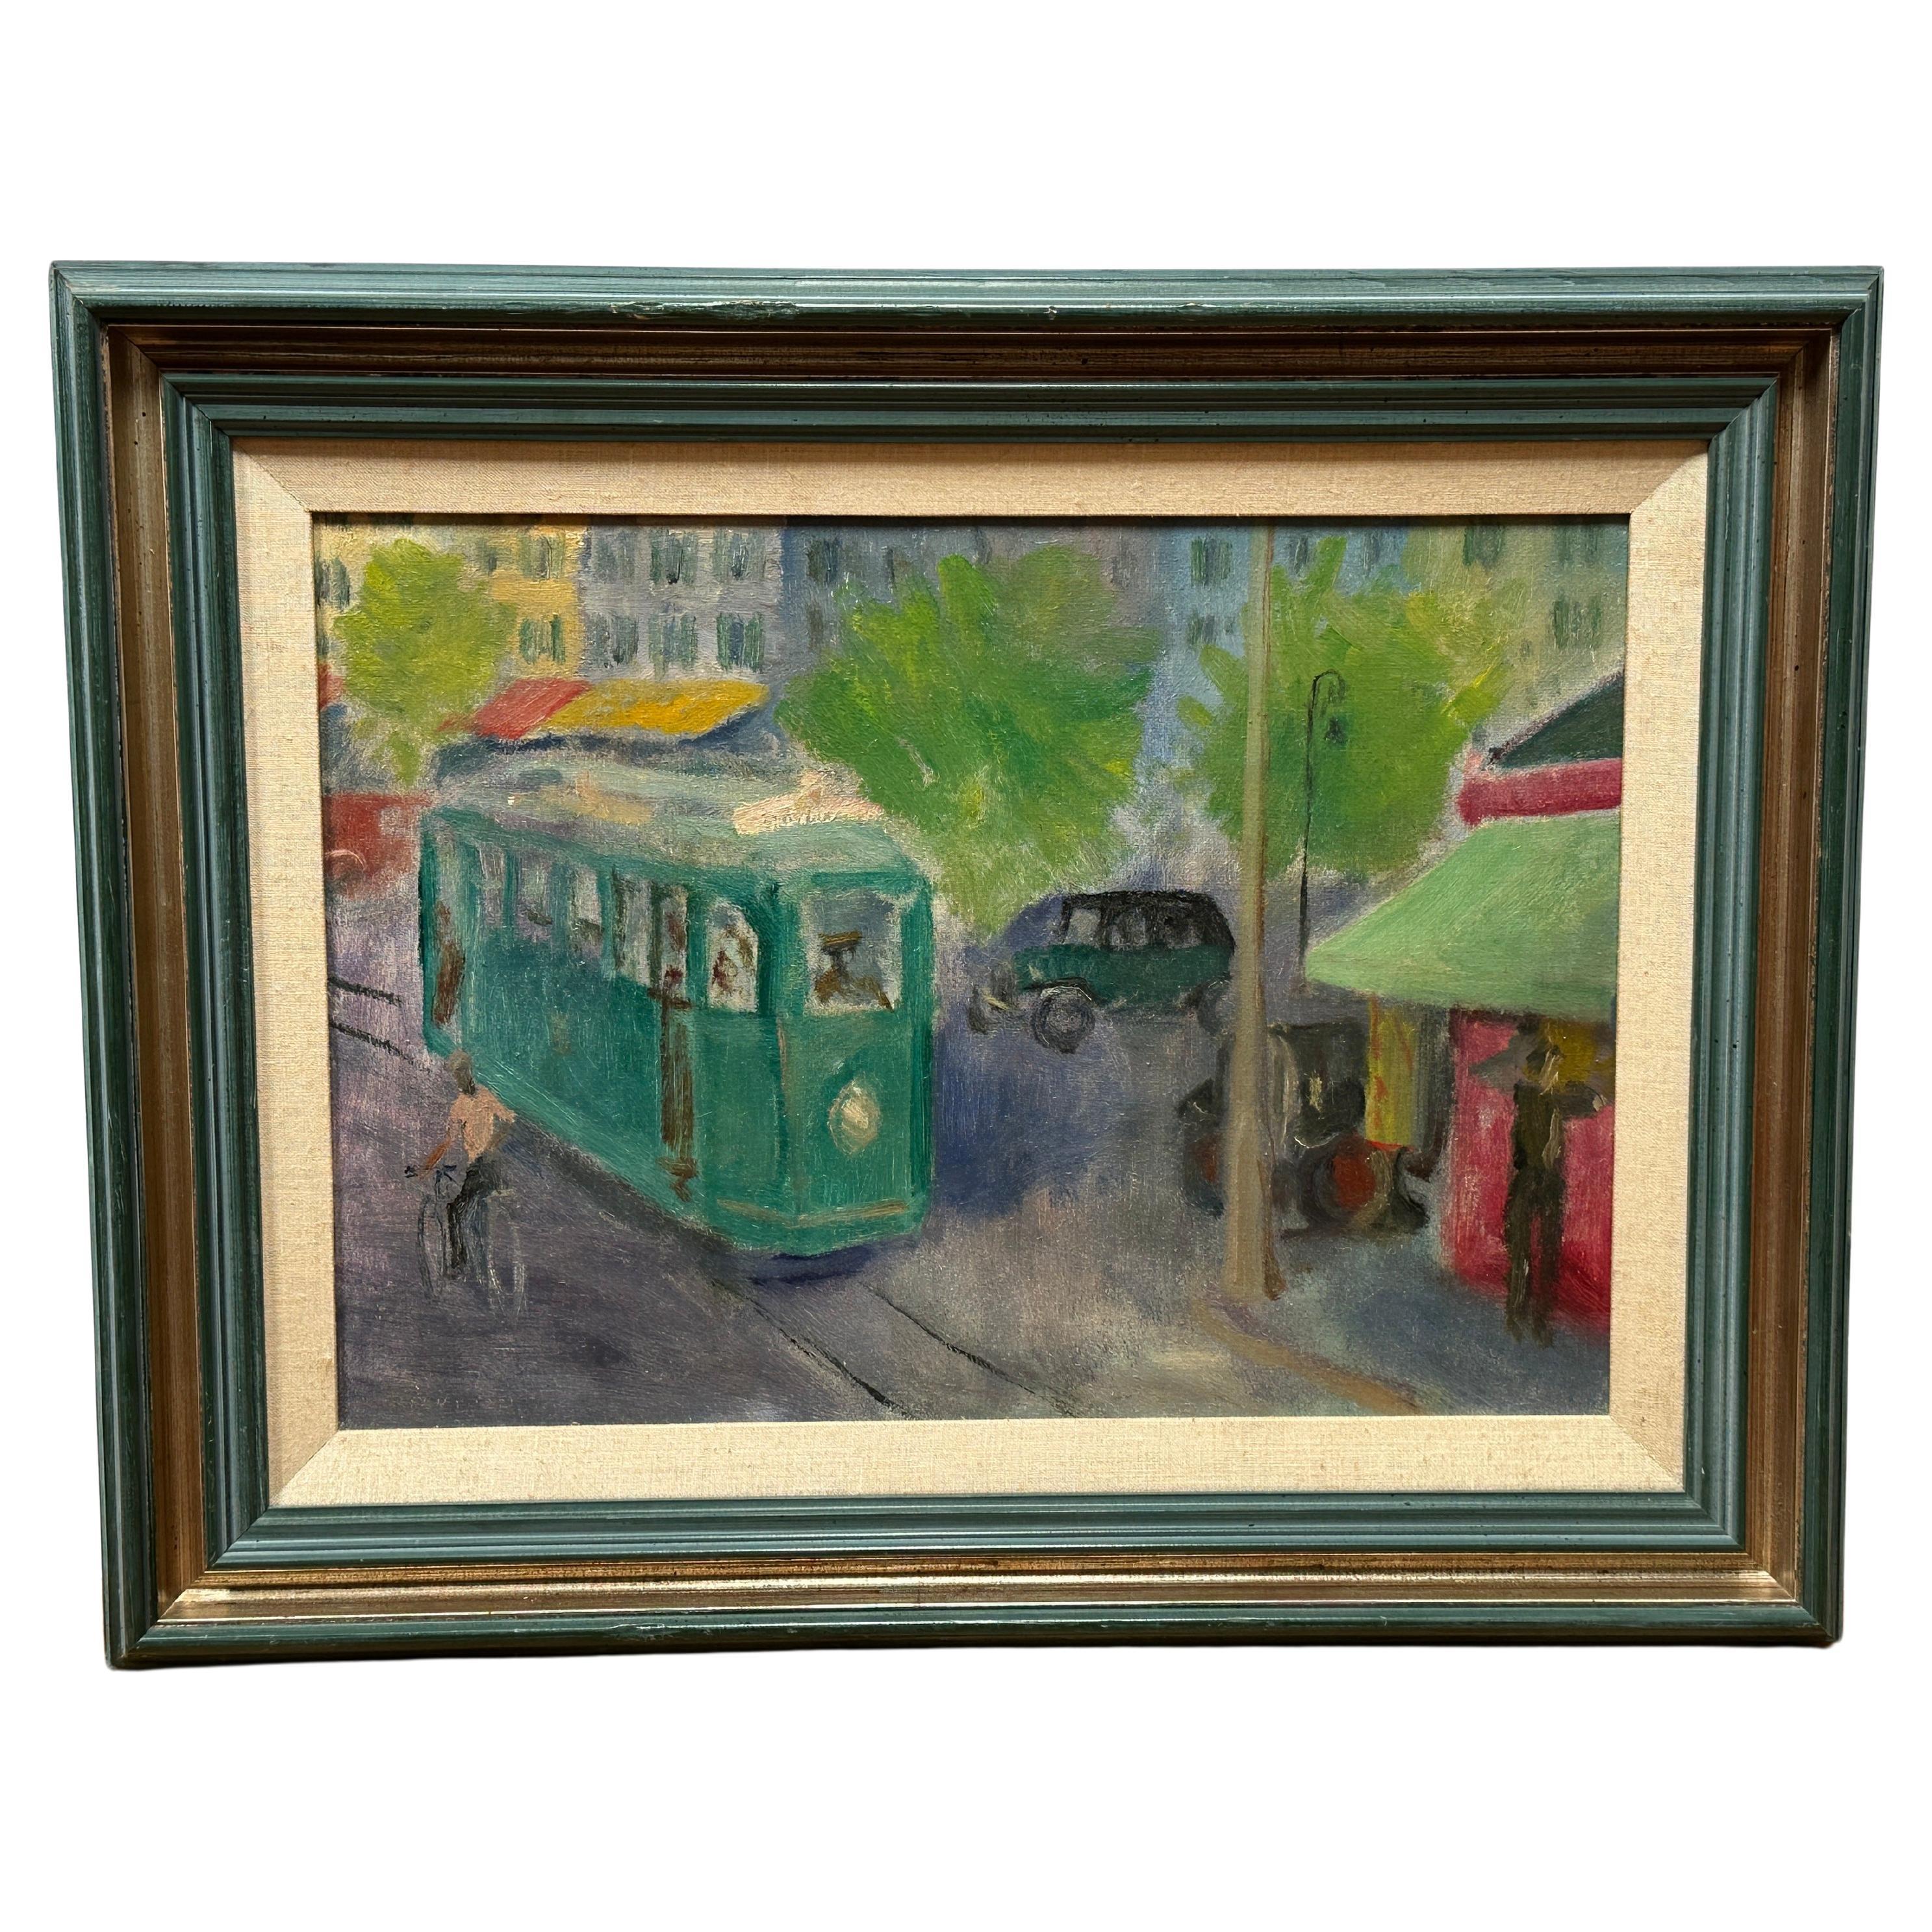 Tram in the Streets of San Francisco, peinture à l'huile sur toile